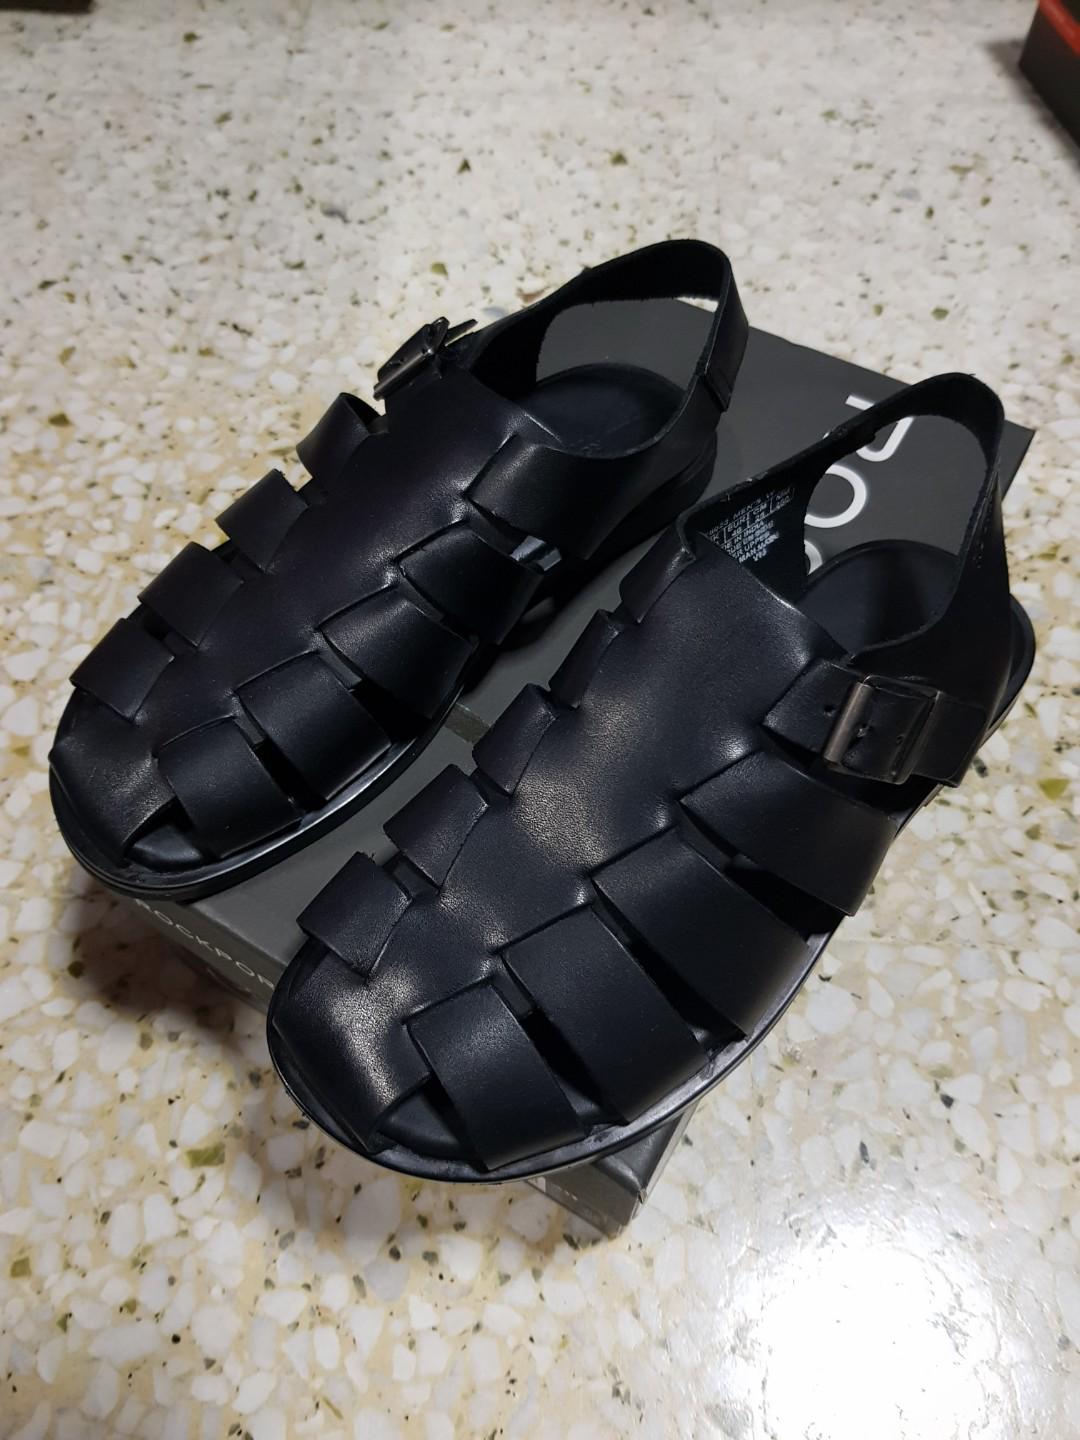 Genuine Leather Rockport Sandals- LAST 